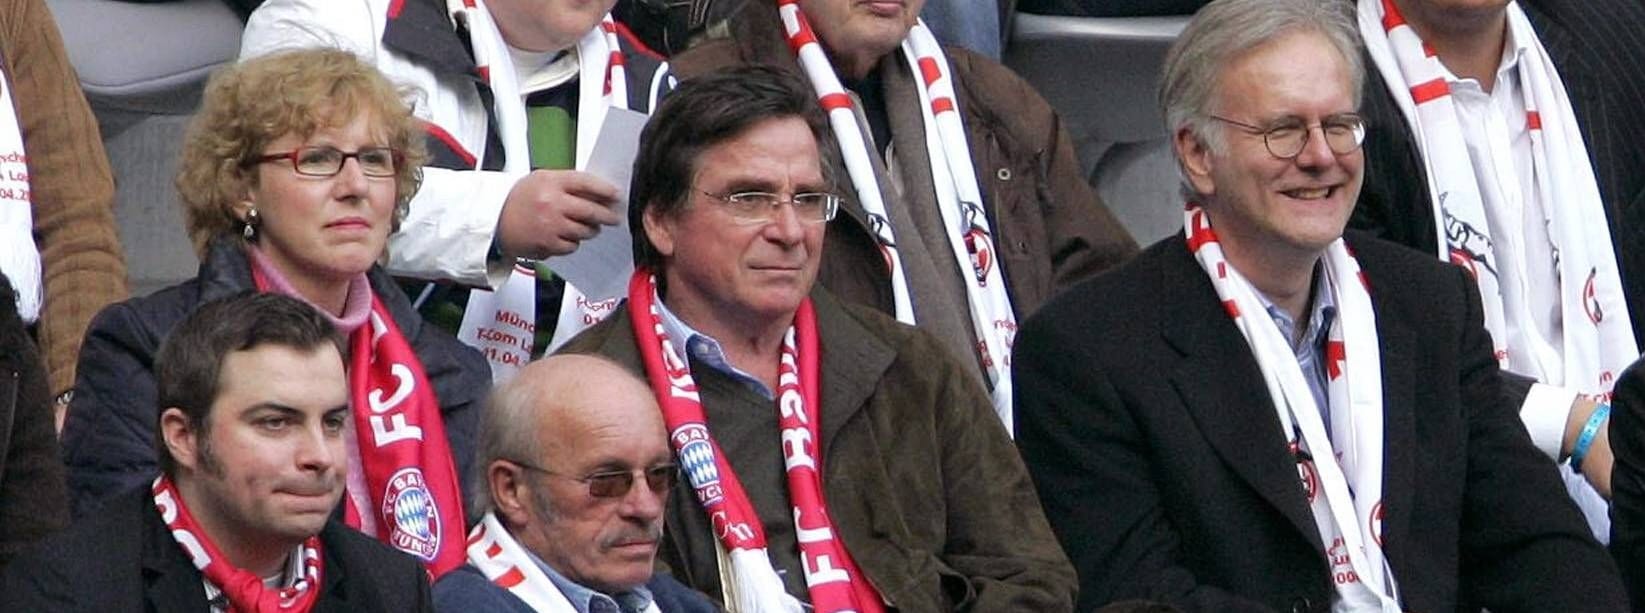 Prominente Fans des FC Bayern in 2006: Schauspieler Elmar Wepper mit Ehefrau Anita und Entertainer Harald Schmidt.